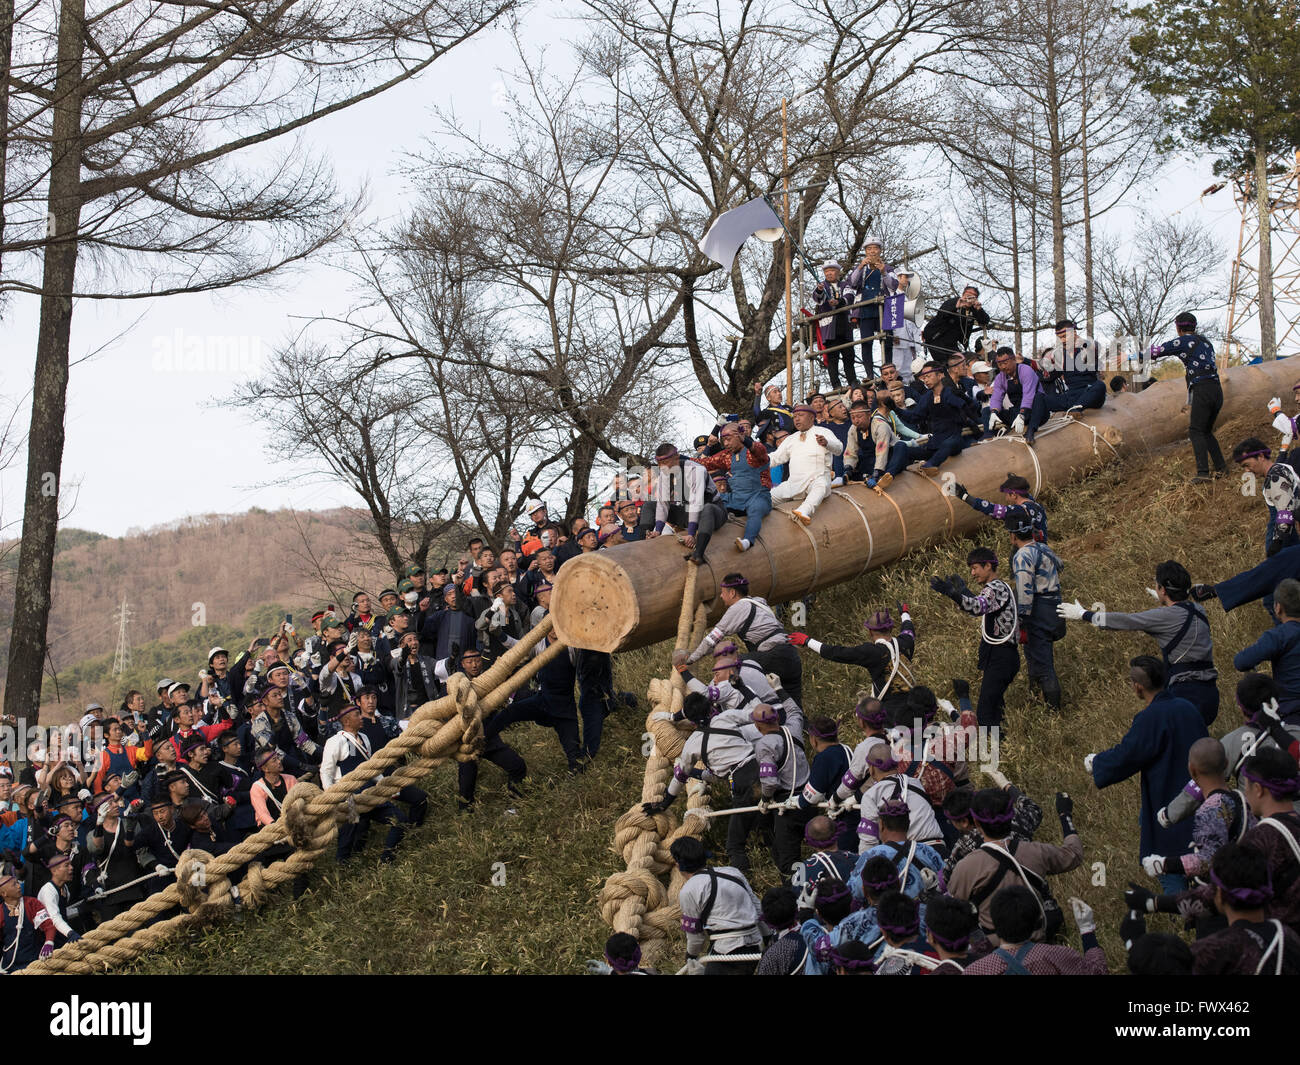 Onbashira Festival à Suwa, Nagano Prefecture, Japan. Le 08 avril 2016 Les hommes risquent leur vie pour monter sur le tronc des arbres sur une colline escarpée. Le tronc des arbres deviendra piliers du sanctuaire local. Le festival a lieu tous les 7 ans, et il est dit à plus de 1200 ans. Crédit : Chris Wilson/Alamy Live News Banque D'Images